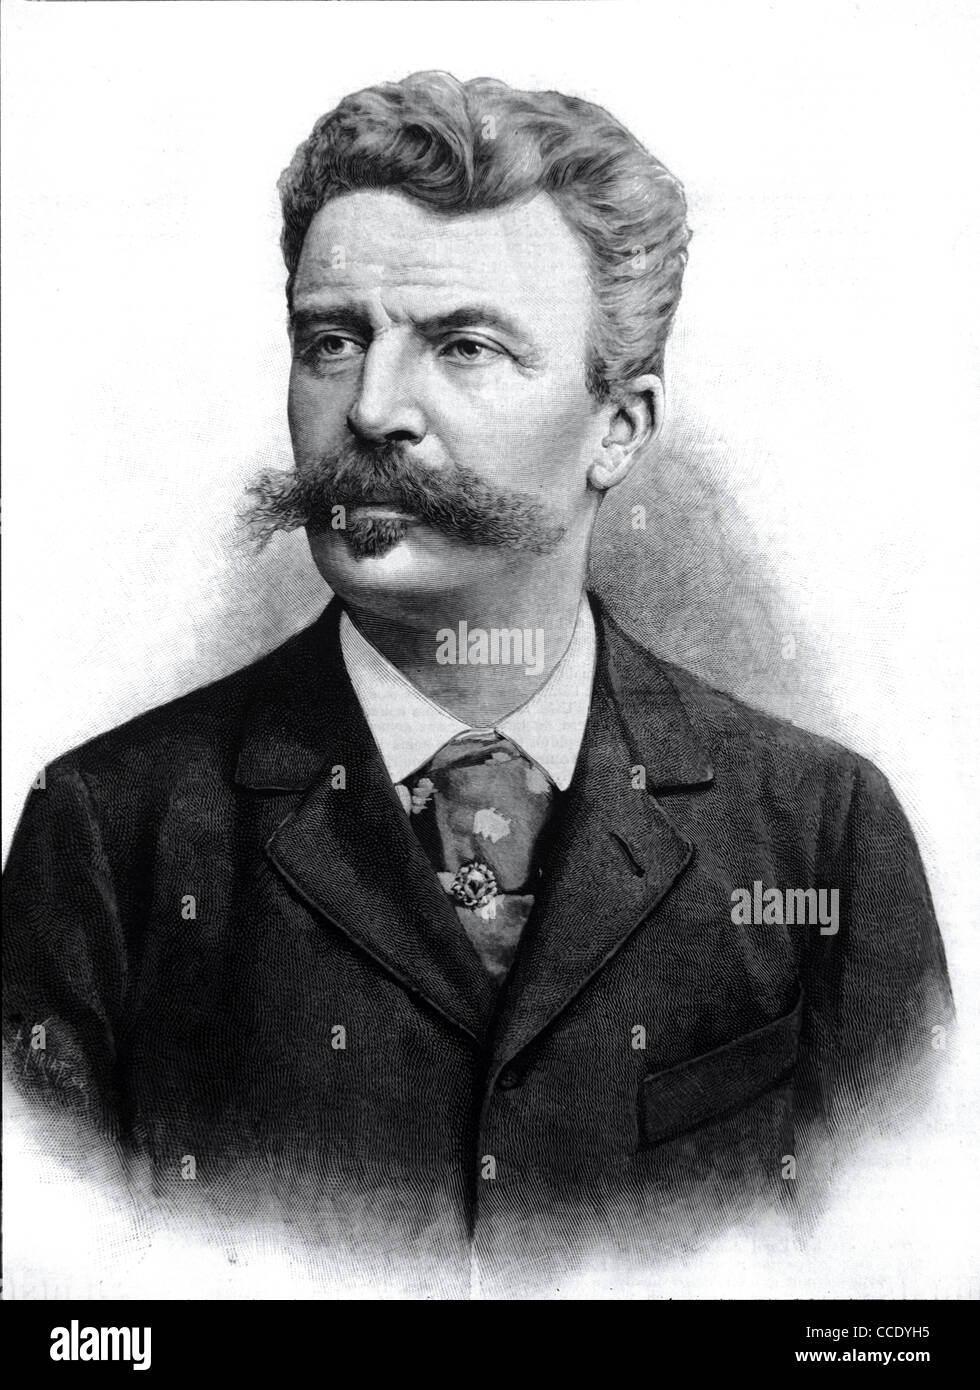 Porträt von Guy de Maupassant, französischer Schriftsteller und Autor von Kurzgeschichten (1850-1893). Vintage Illustration oder Gravur Stockfoto